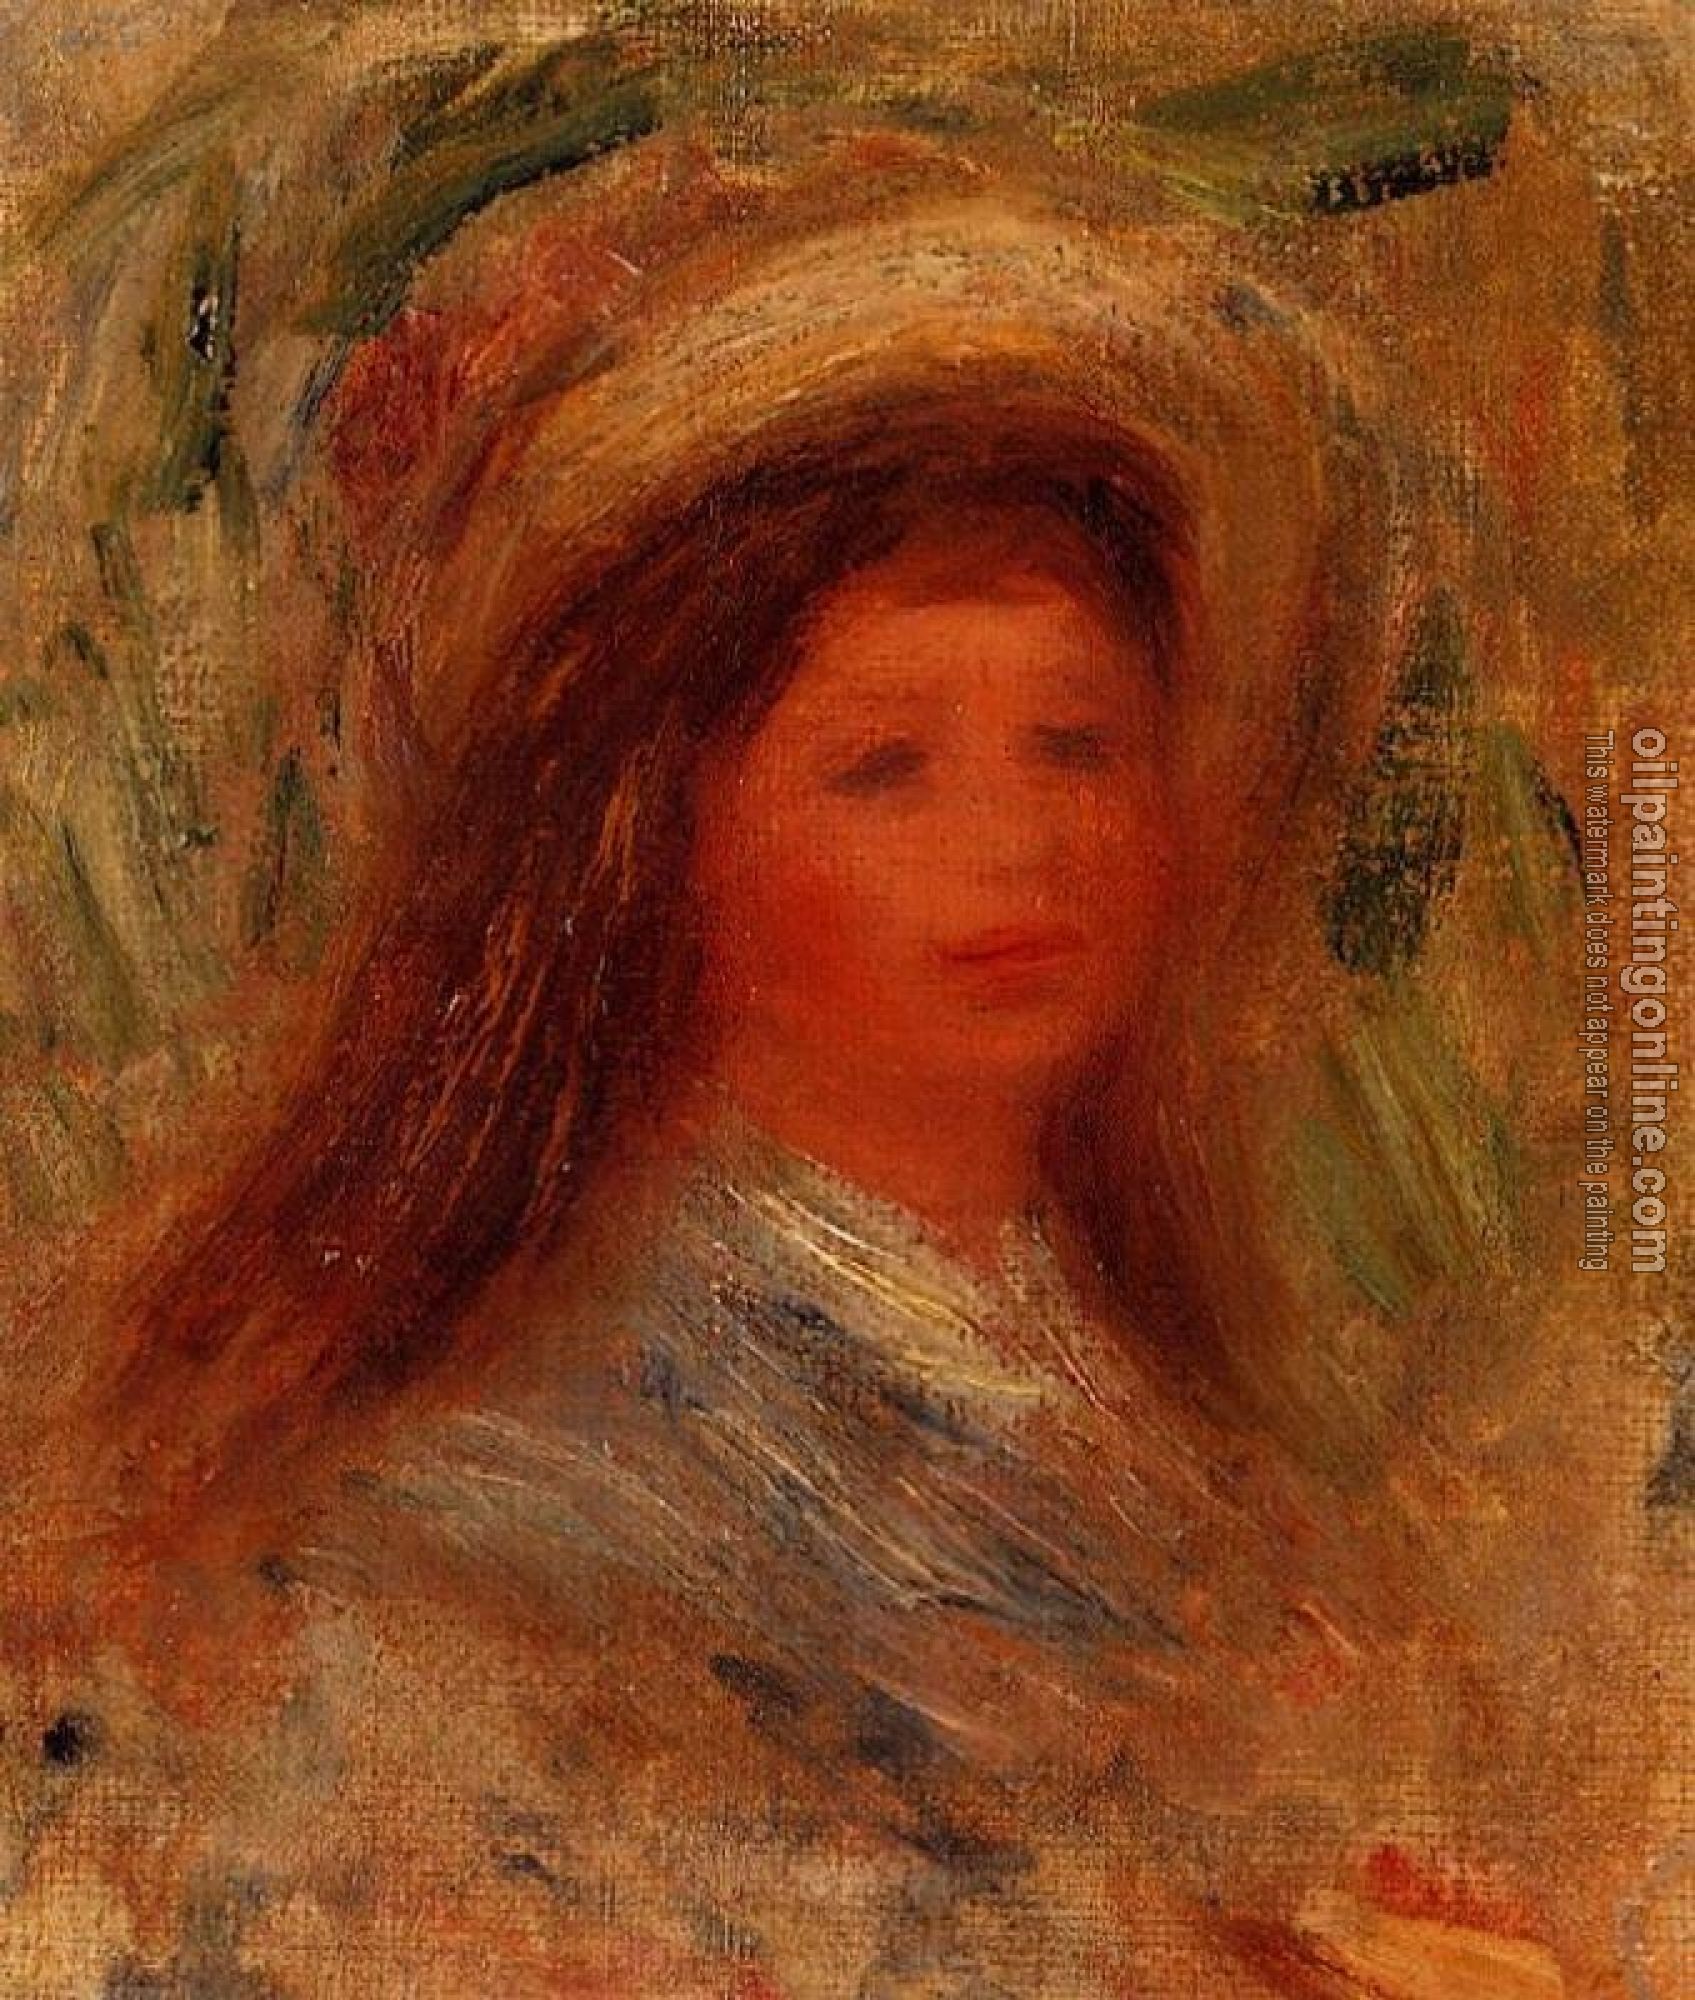 Renoir, Pierre Auguste - Head of a Woman